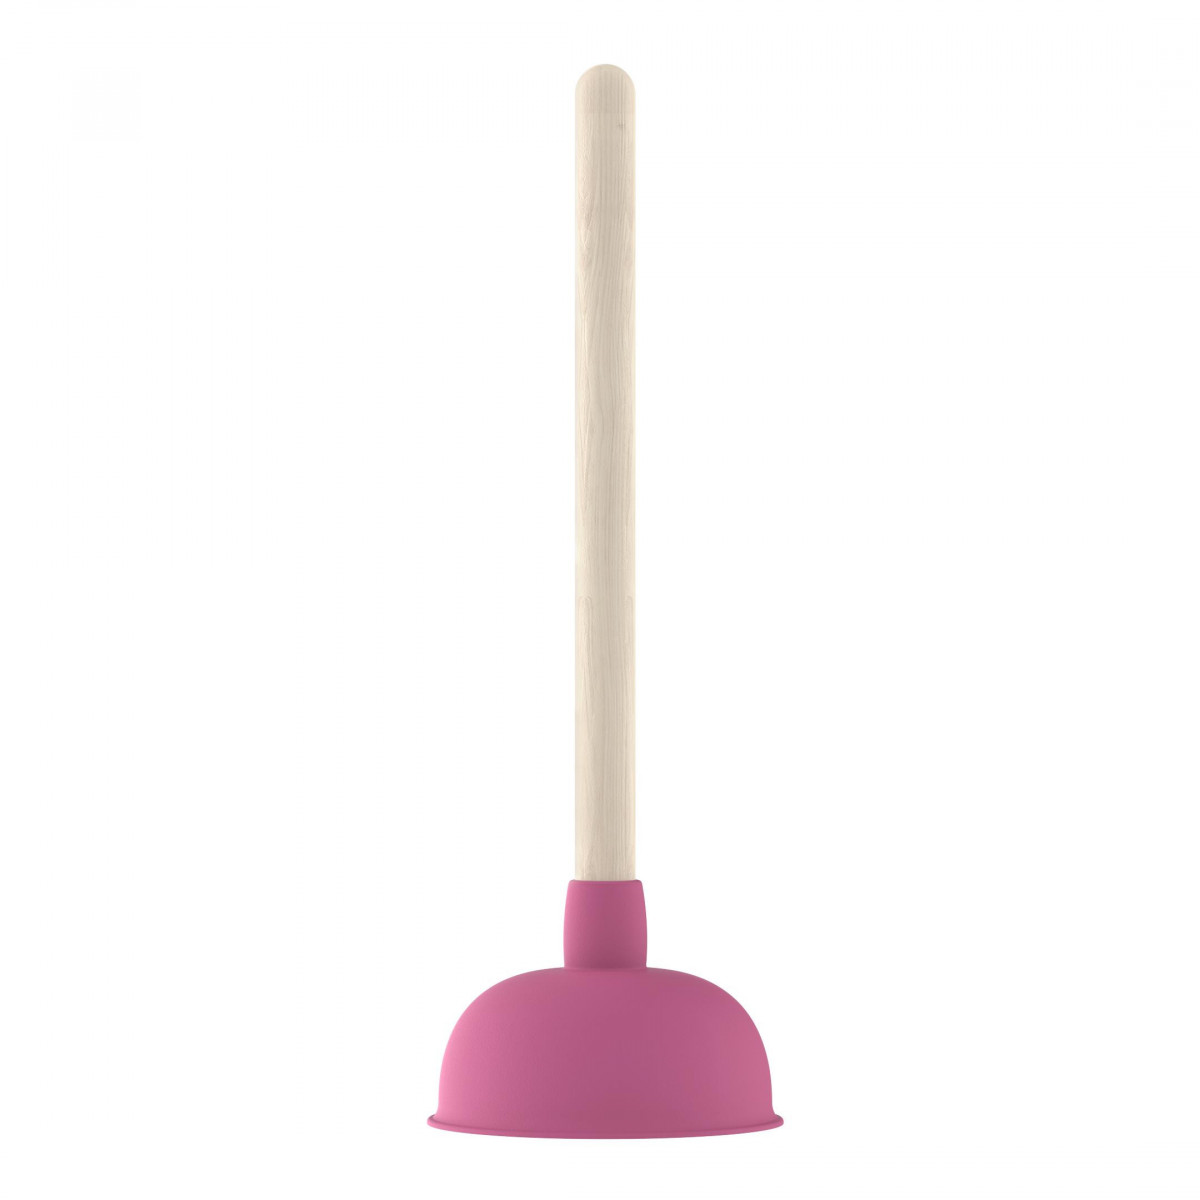 Saugglocke, Pömpel in Pink mit Holzgriff, Ø 140 mm